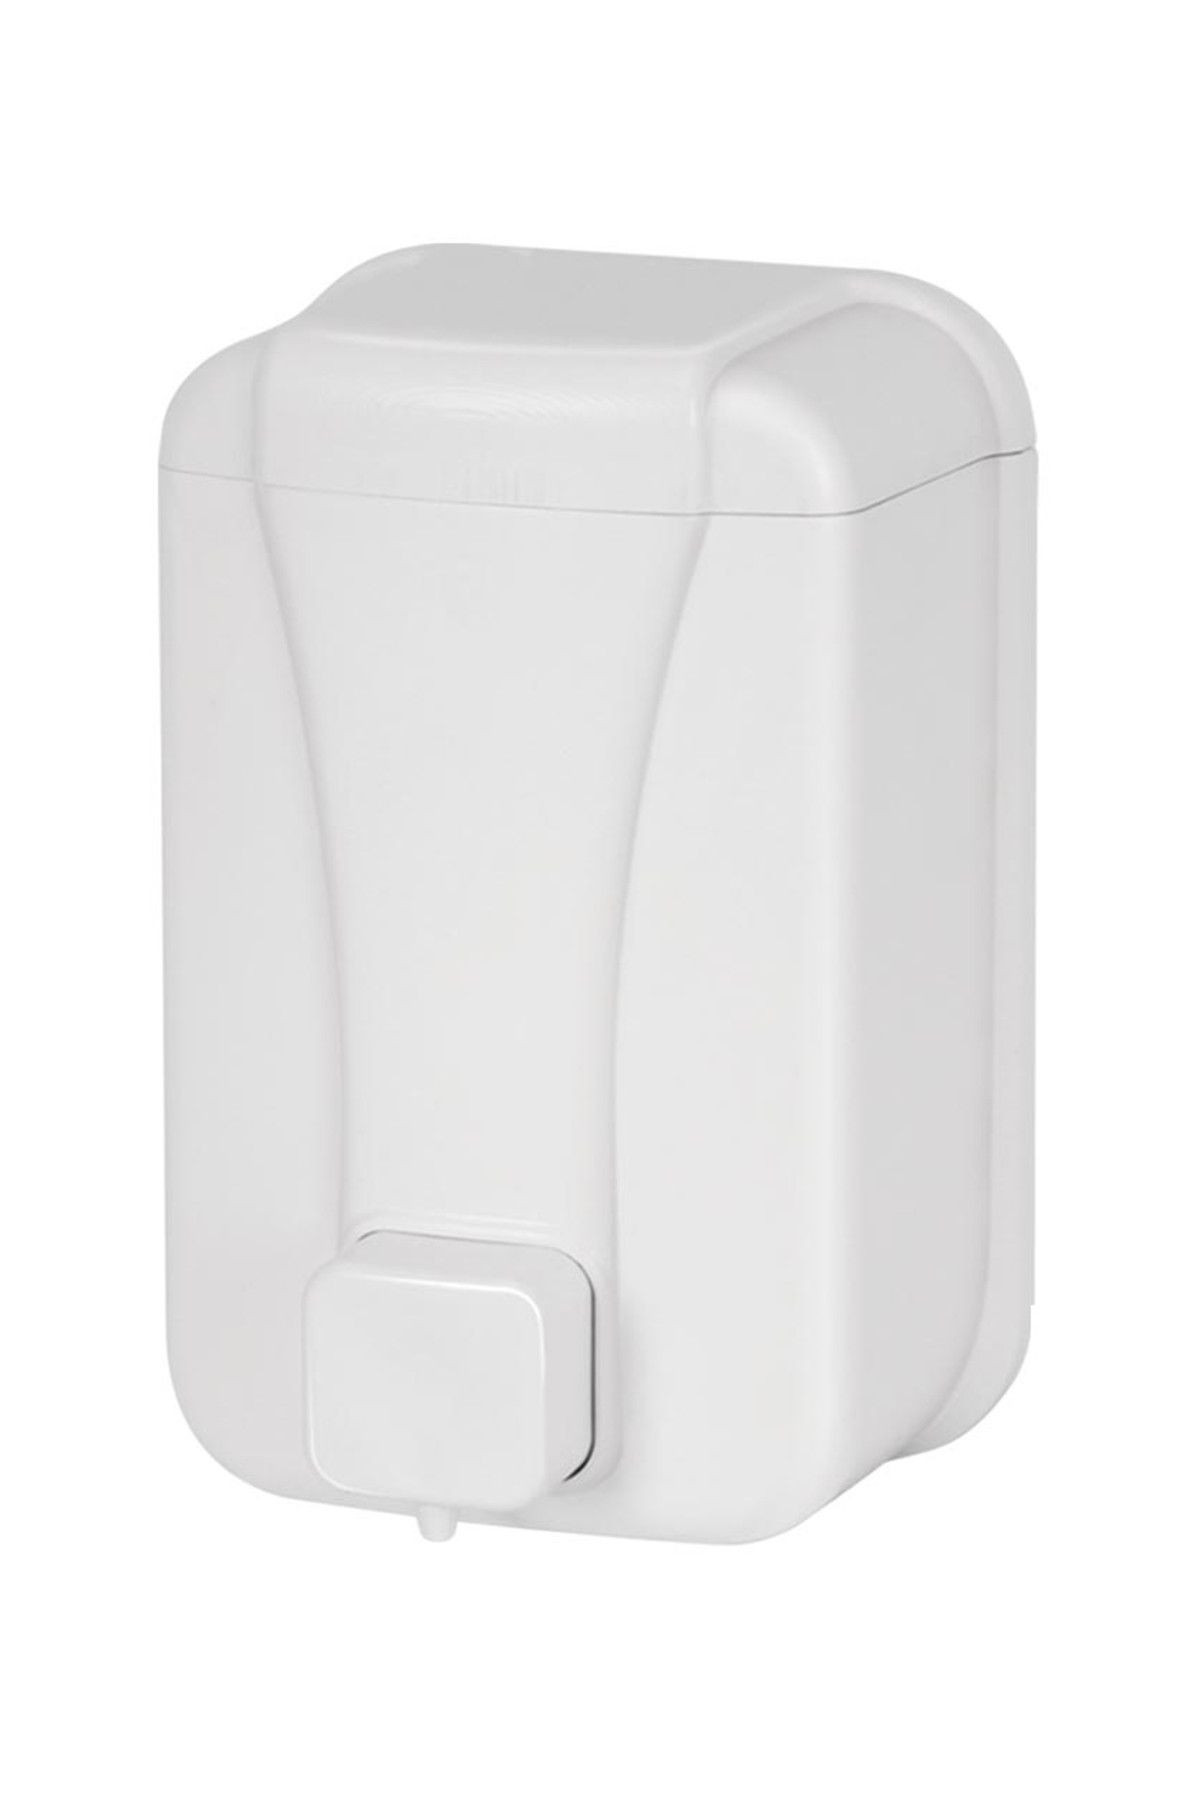 Alper Banyo Sıvı Sabun Dispenseri 1000 cc Beyaz AY518